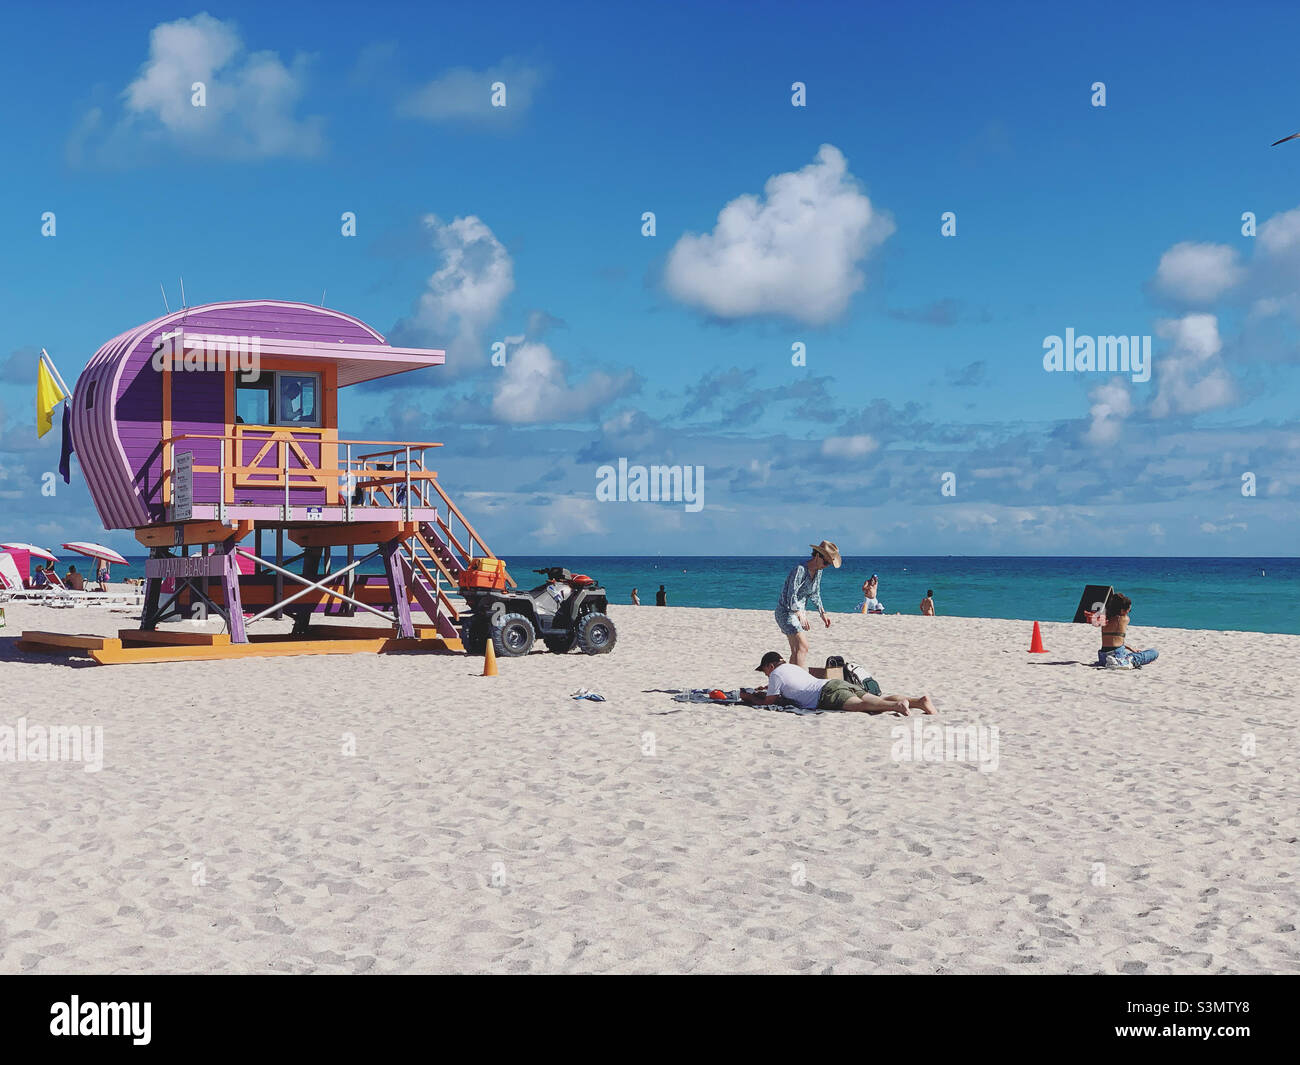 2021 décembre 17th Street Lifeguard Station, South Beach, Miami Beach, Floride, États-Unis,Amérique du Nord Banque D'Images